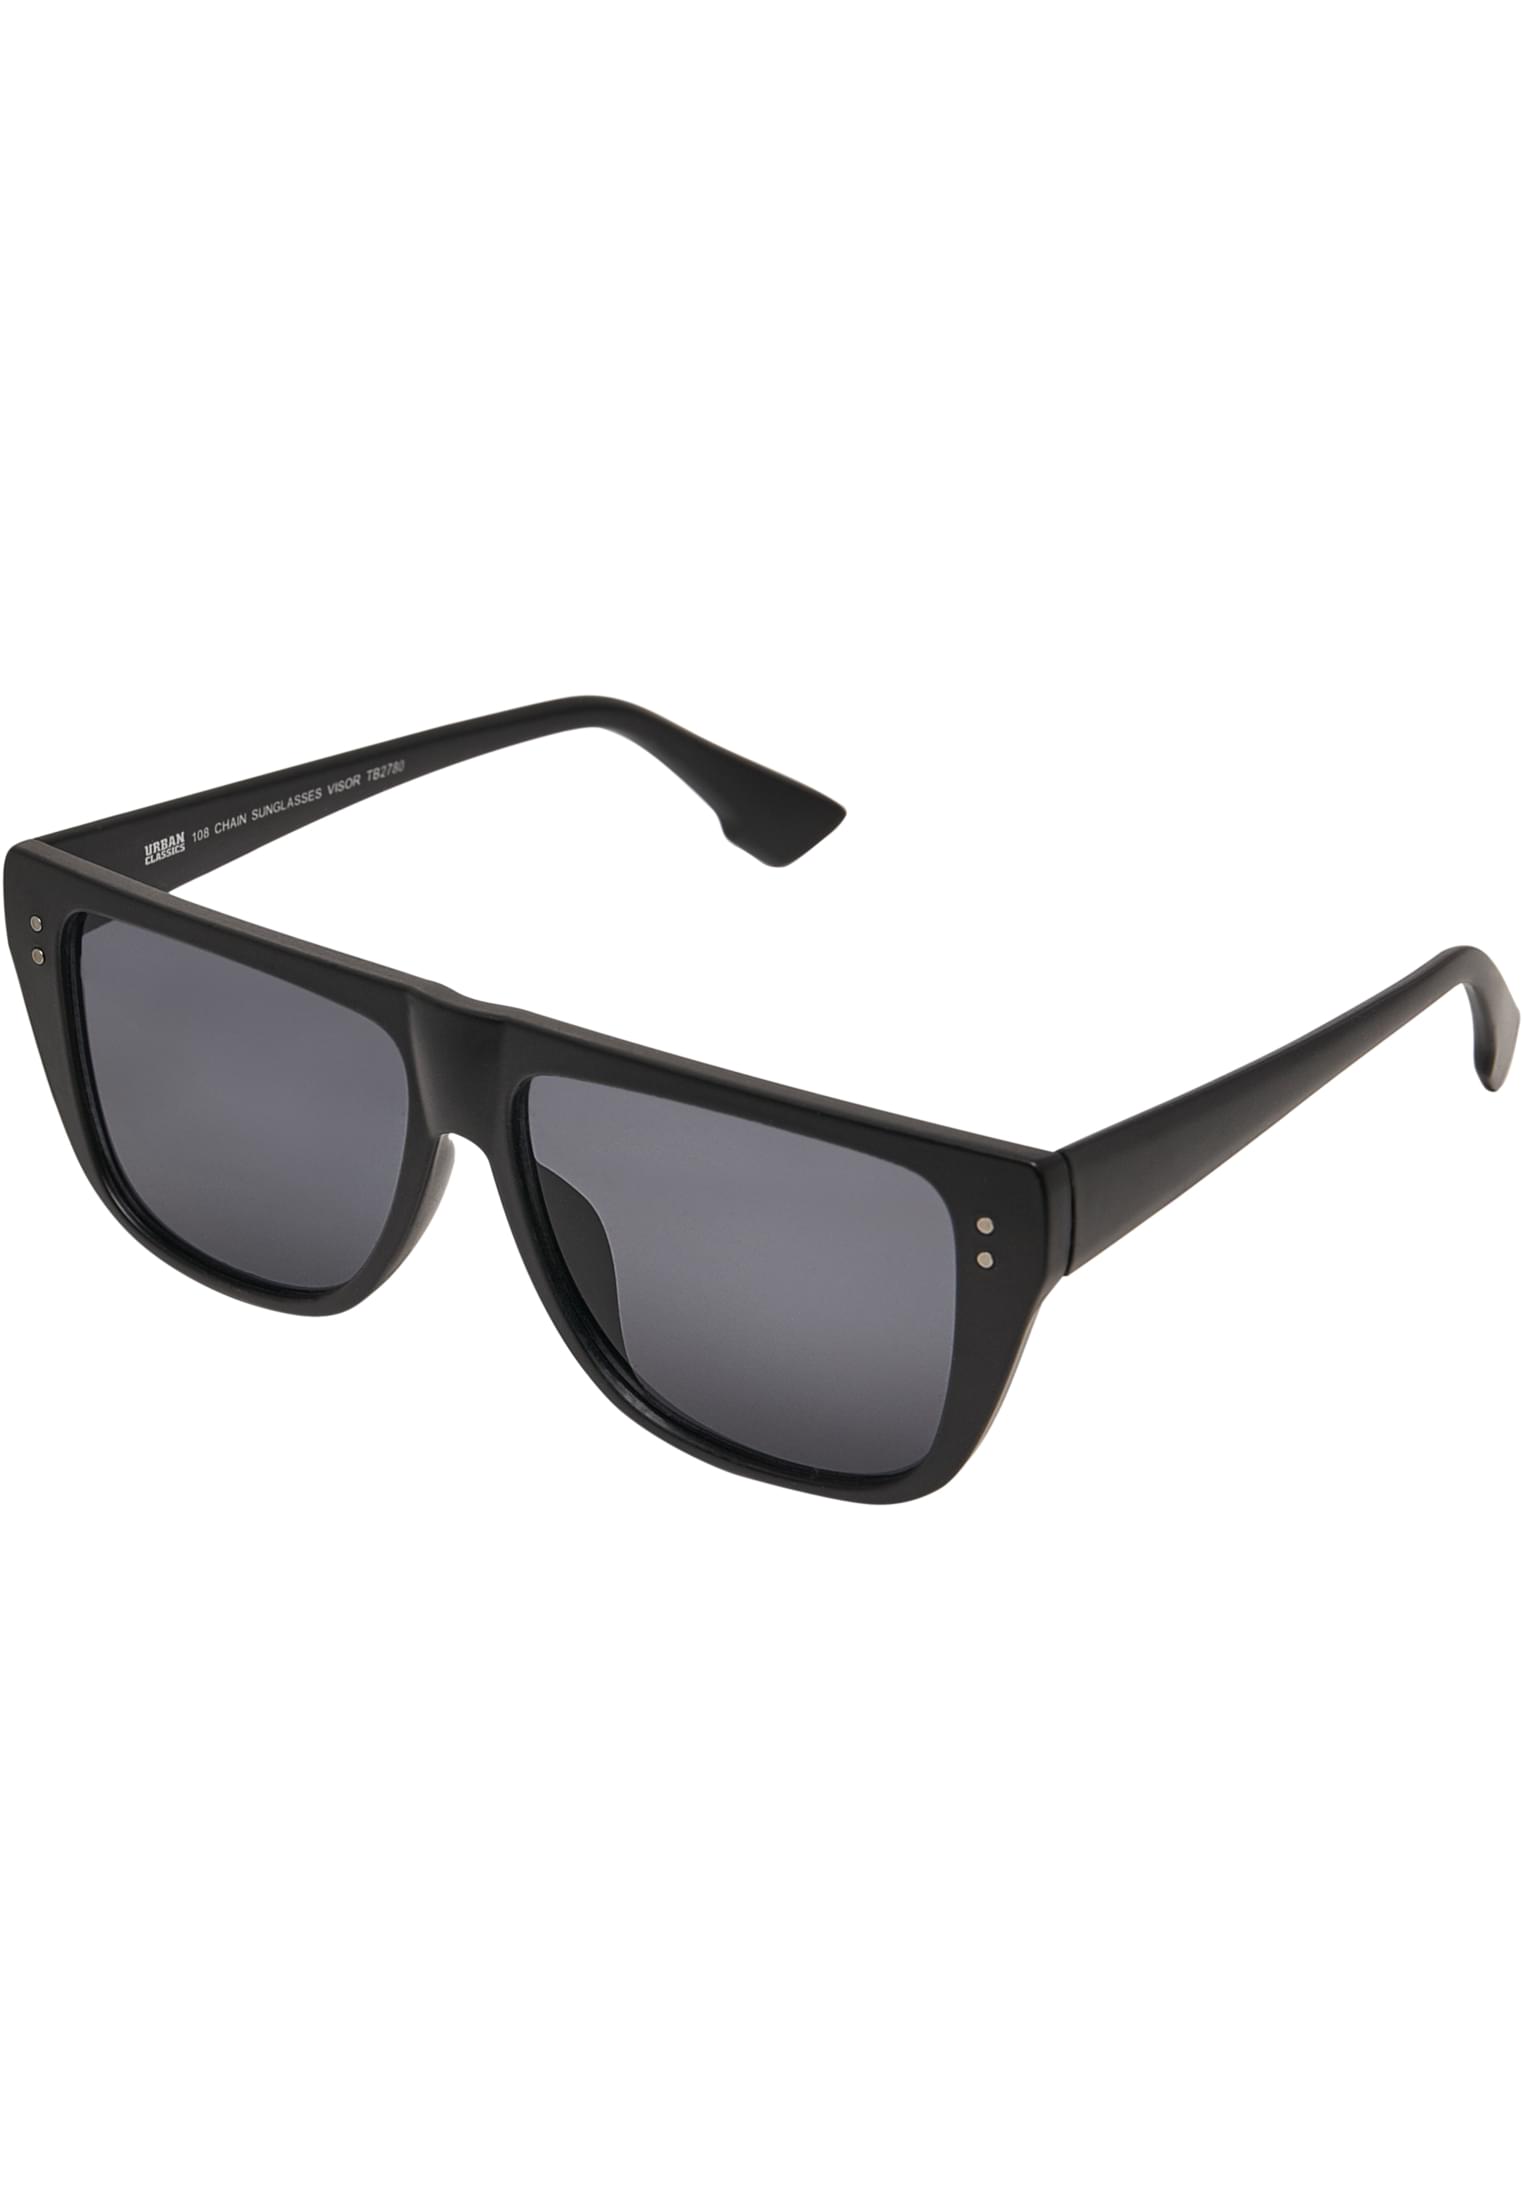 Chain Sunglasses 108 Visor-TB2780